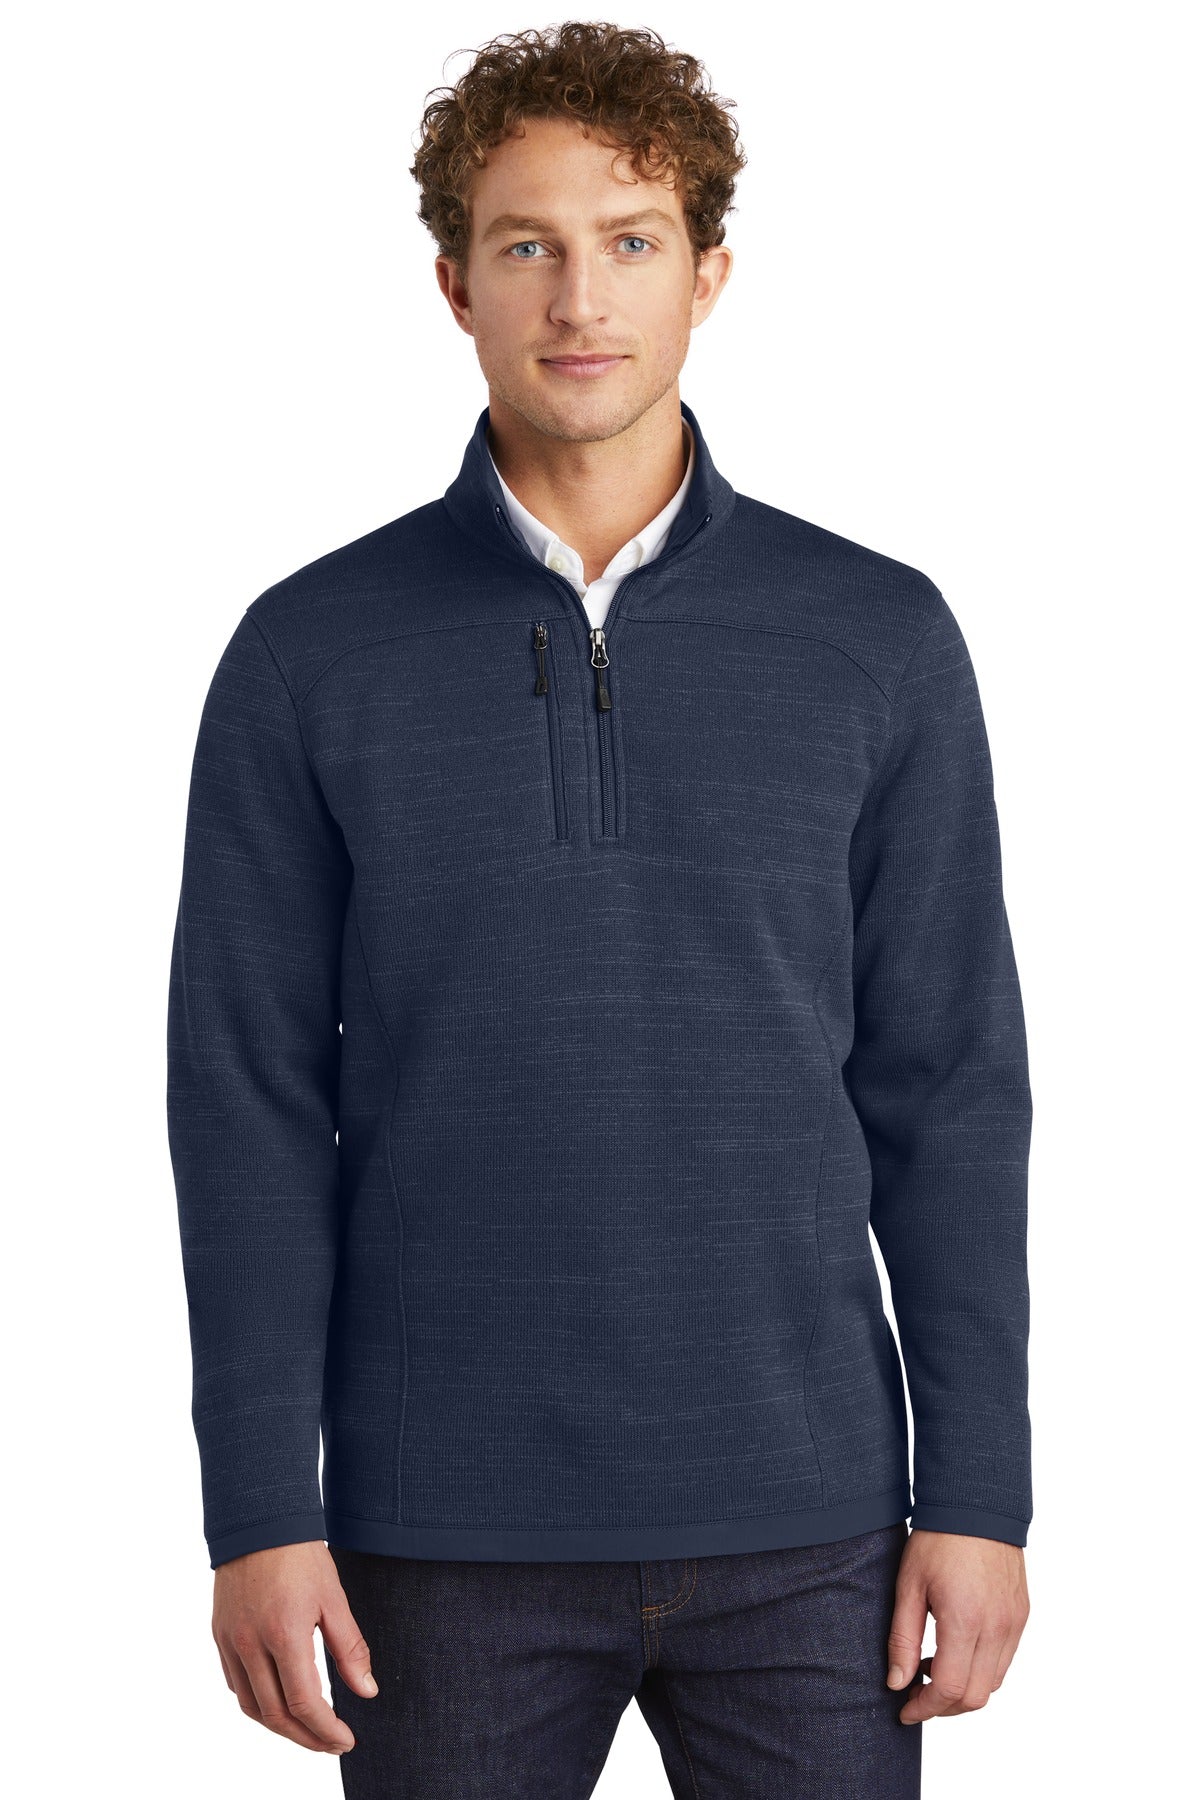 Eddie Bauer ® Sweater Fleece 1/4-Zip. EB254 - DFW Impression